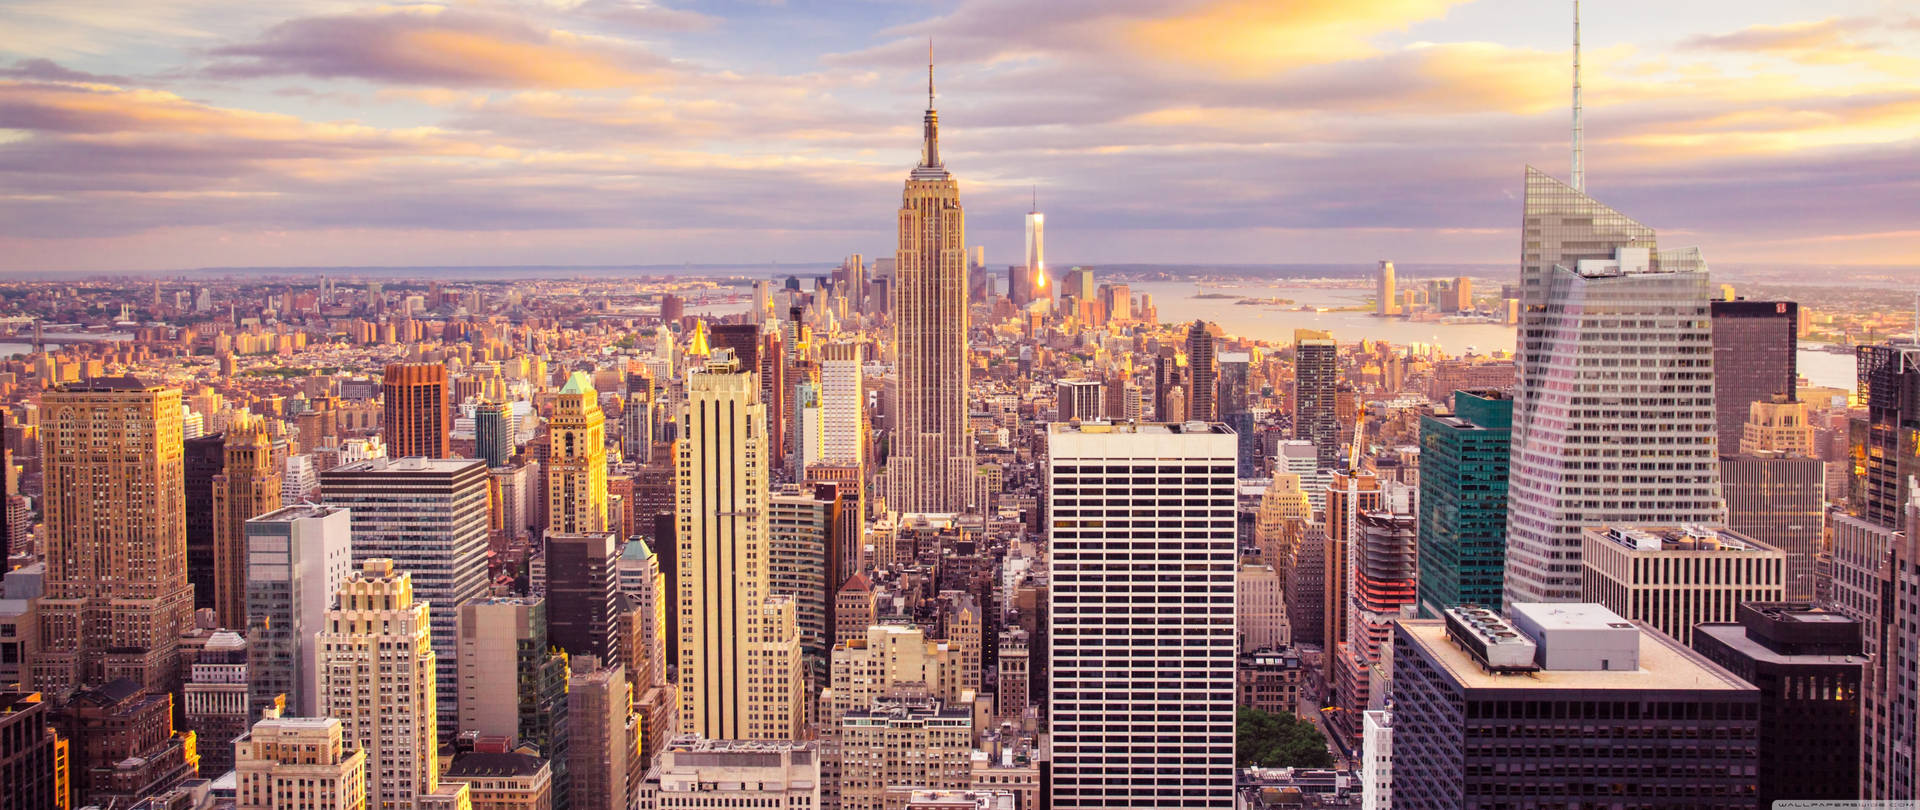 New York City View 4k Ultra Widescreen Wallpaper